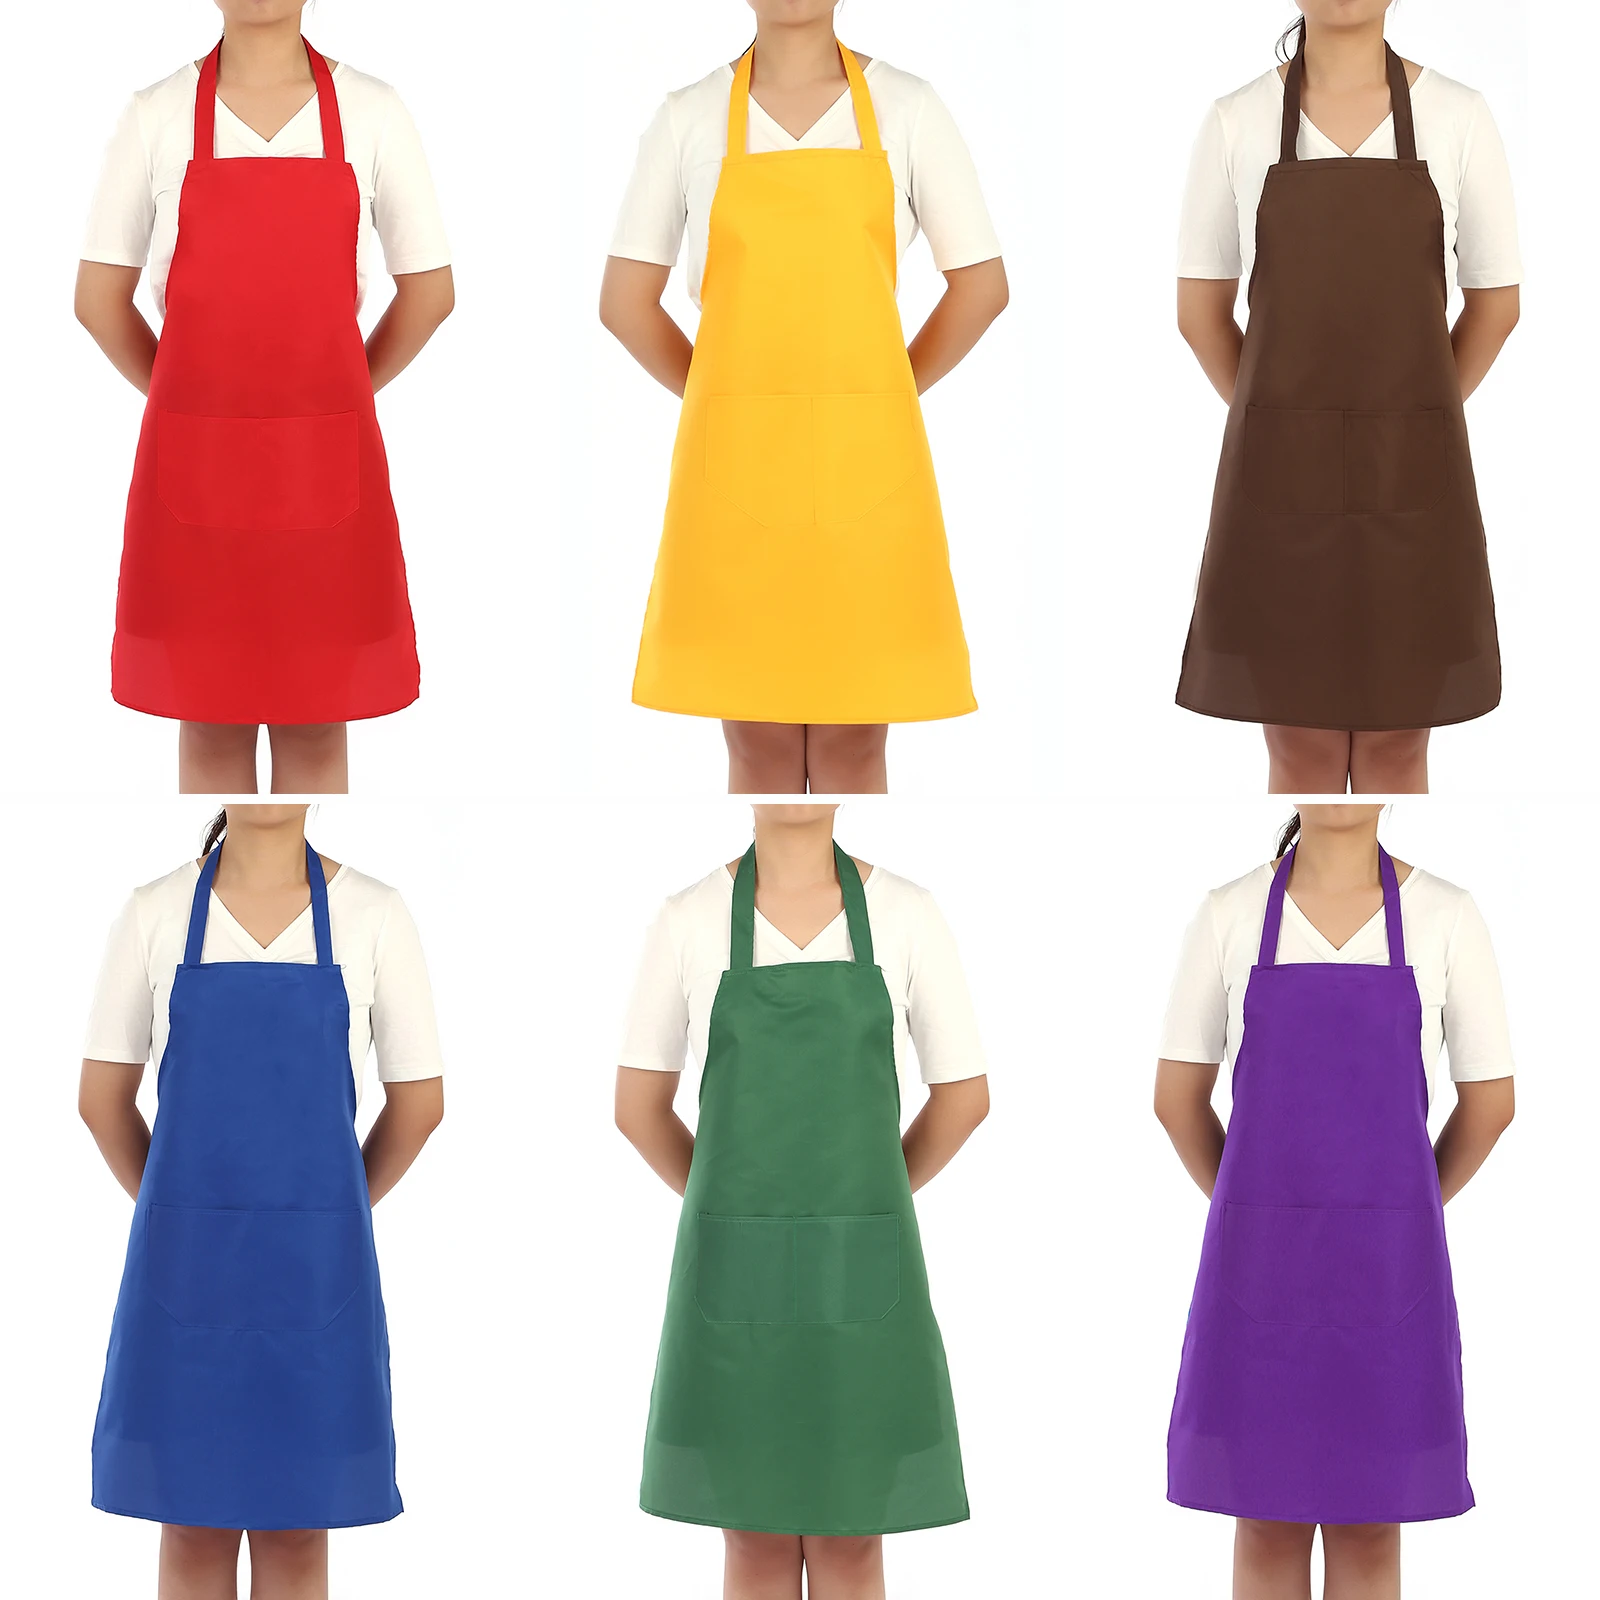 

Цветной фартук с карманом для приготовления пищи для женщин и мужчин, чистящие фартуки без рукавов, одежда, водонепроницаемые маслостойкие кухонные аксессуары для шеф-повара